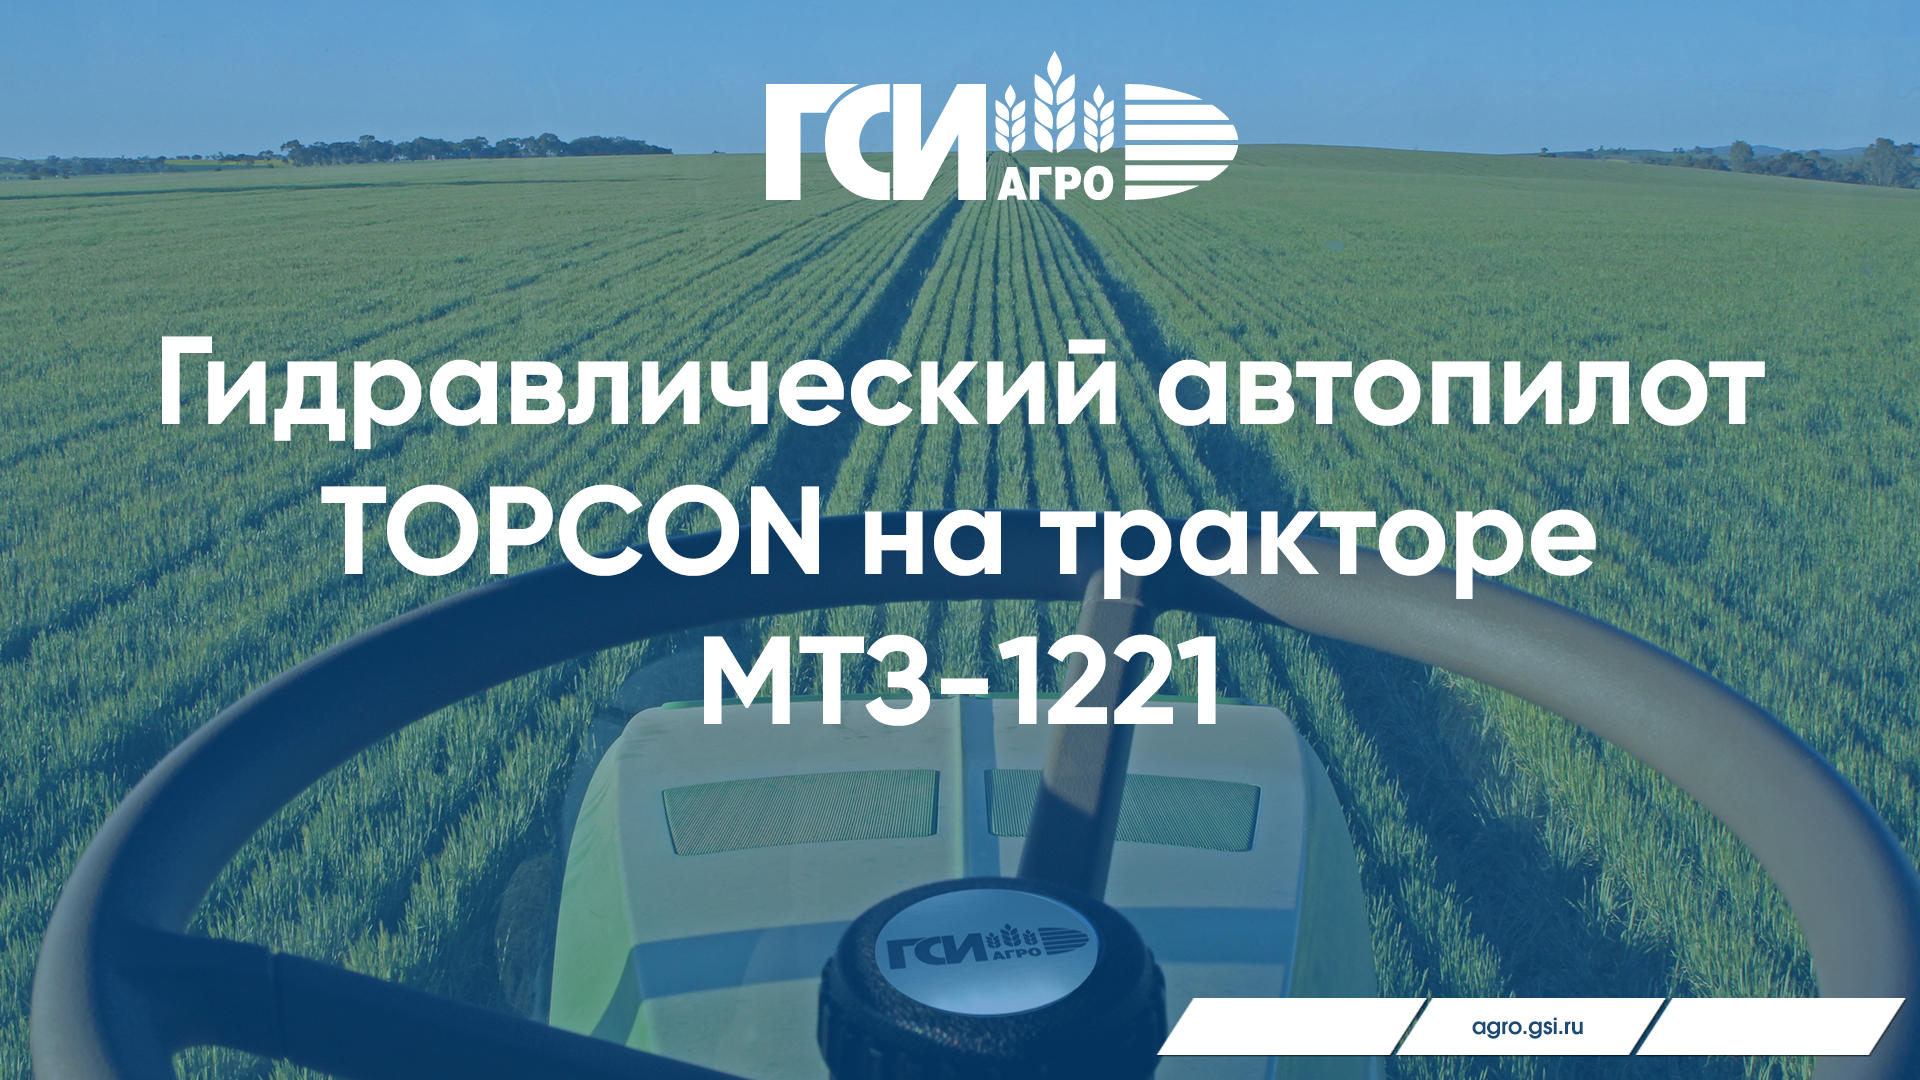 Гидравлический автопилот на тракторе МТЗ-1221 на картофелеводческой ферме в Московской области